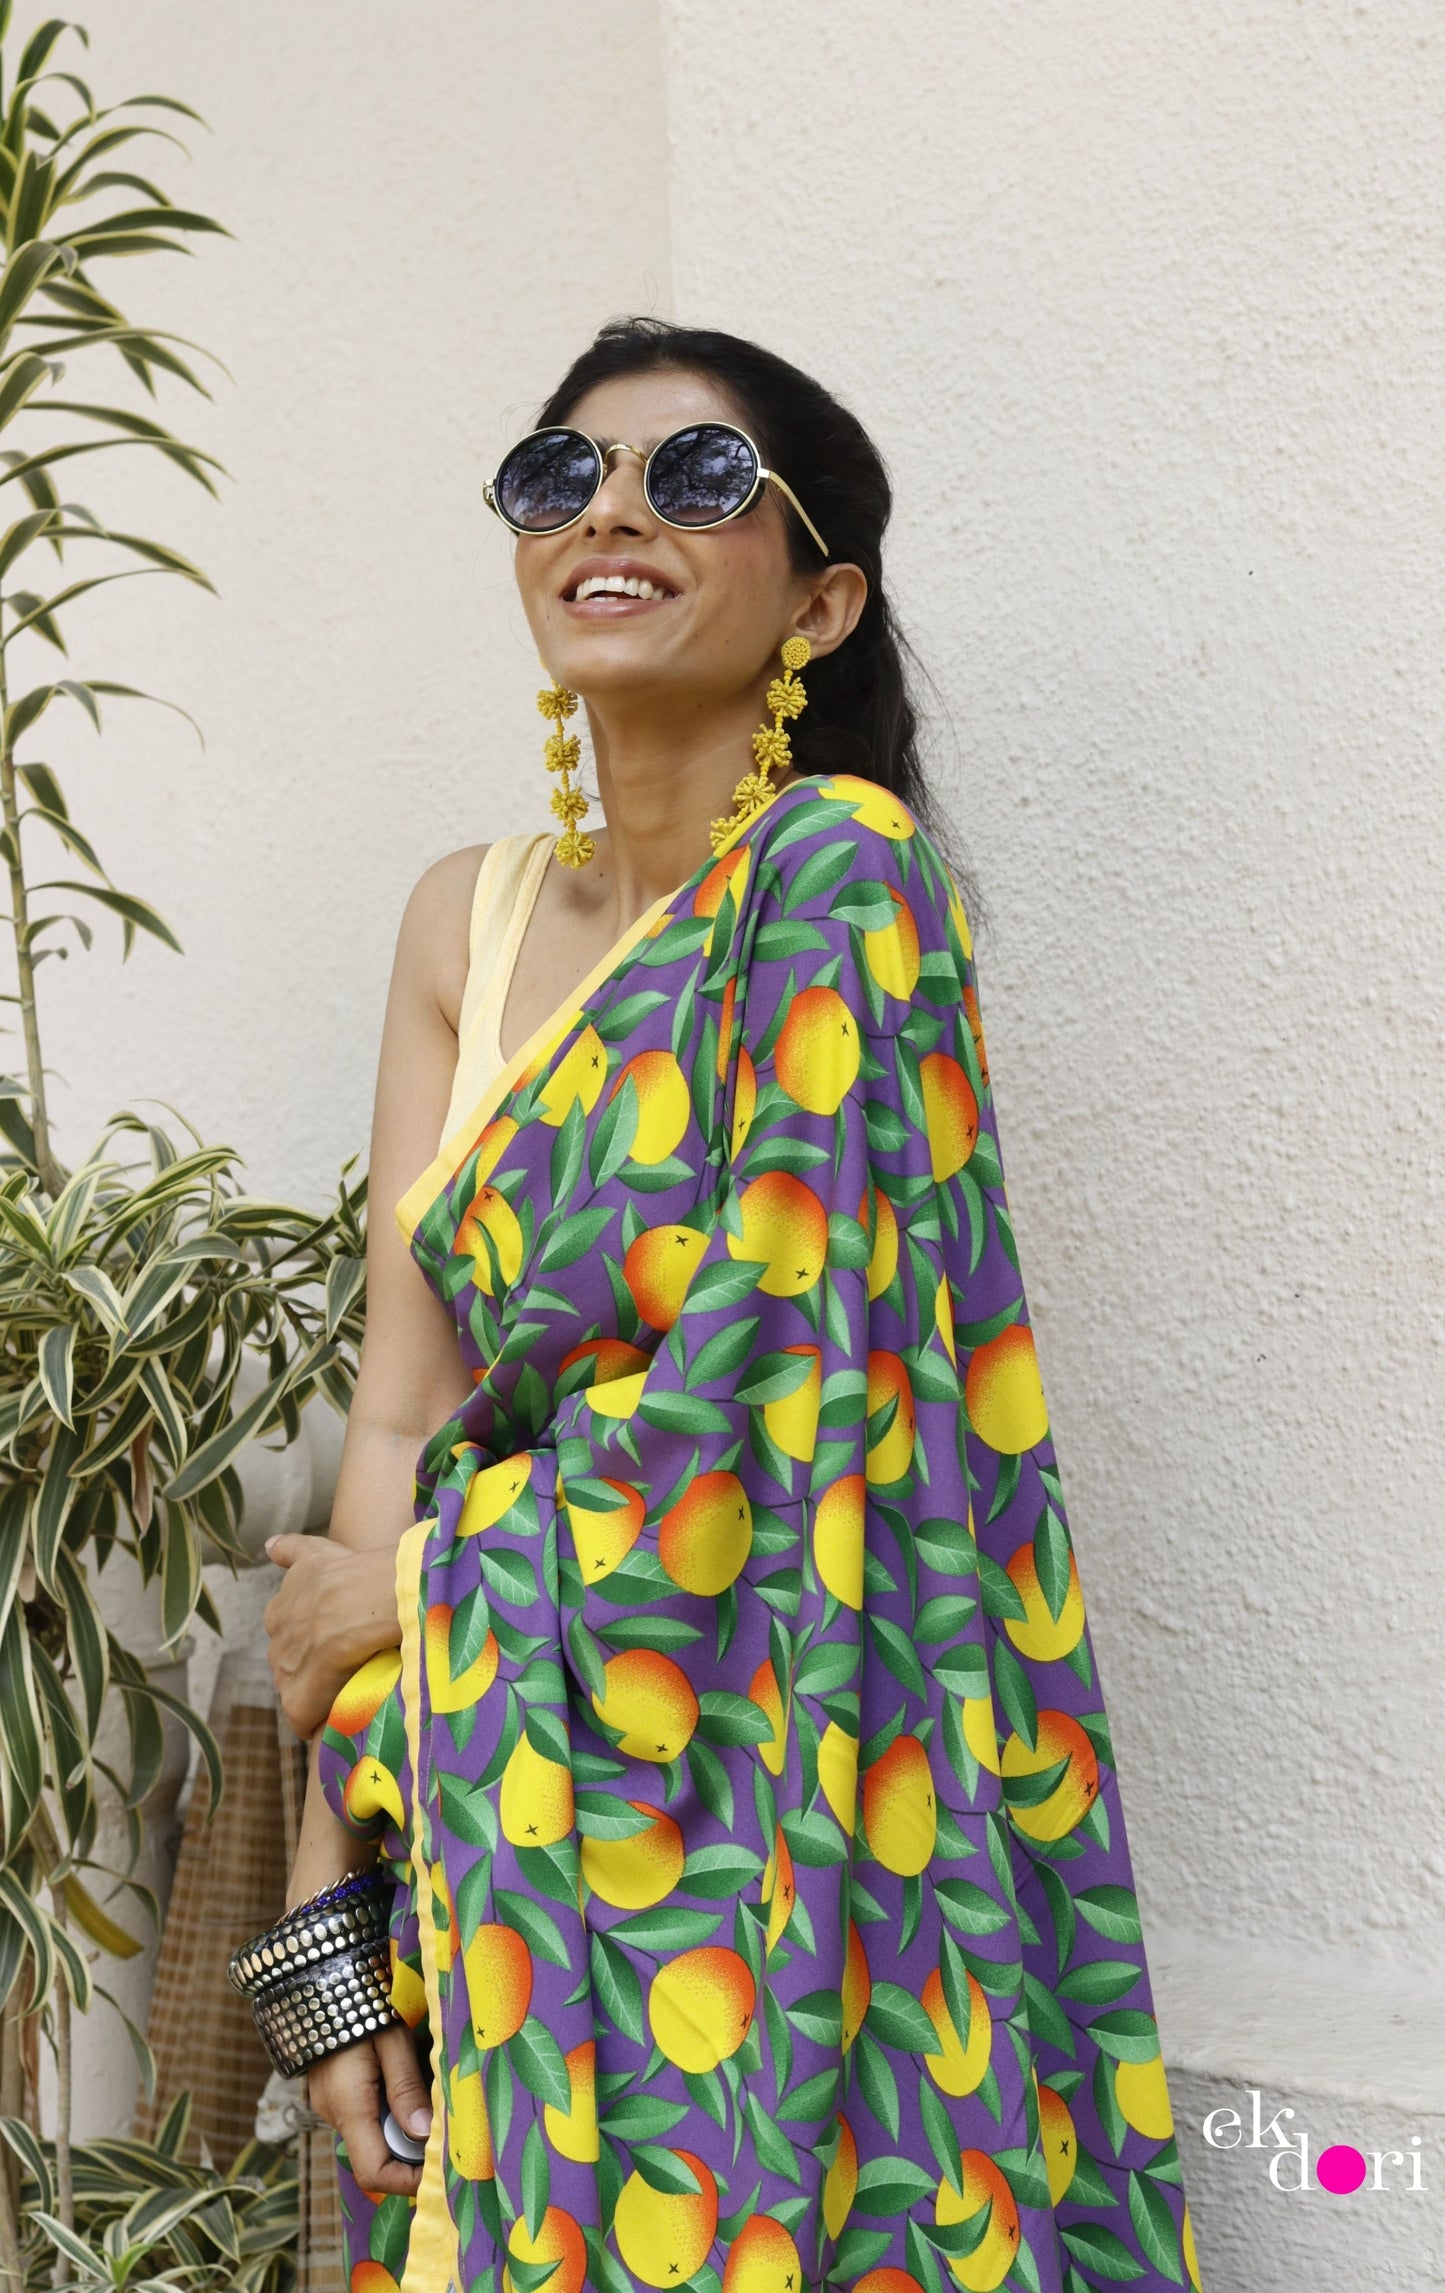 Lemon Saree : Fun Under The Sun Saree Collection : Fun Printed Sarees For Summer